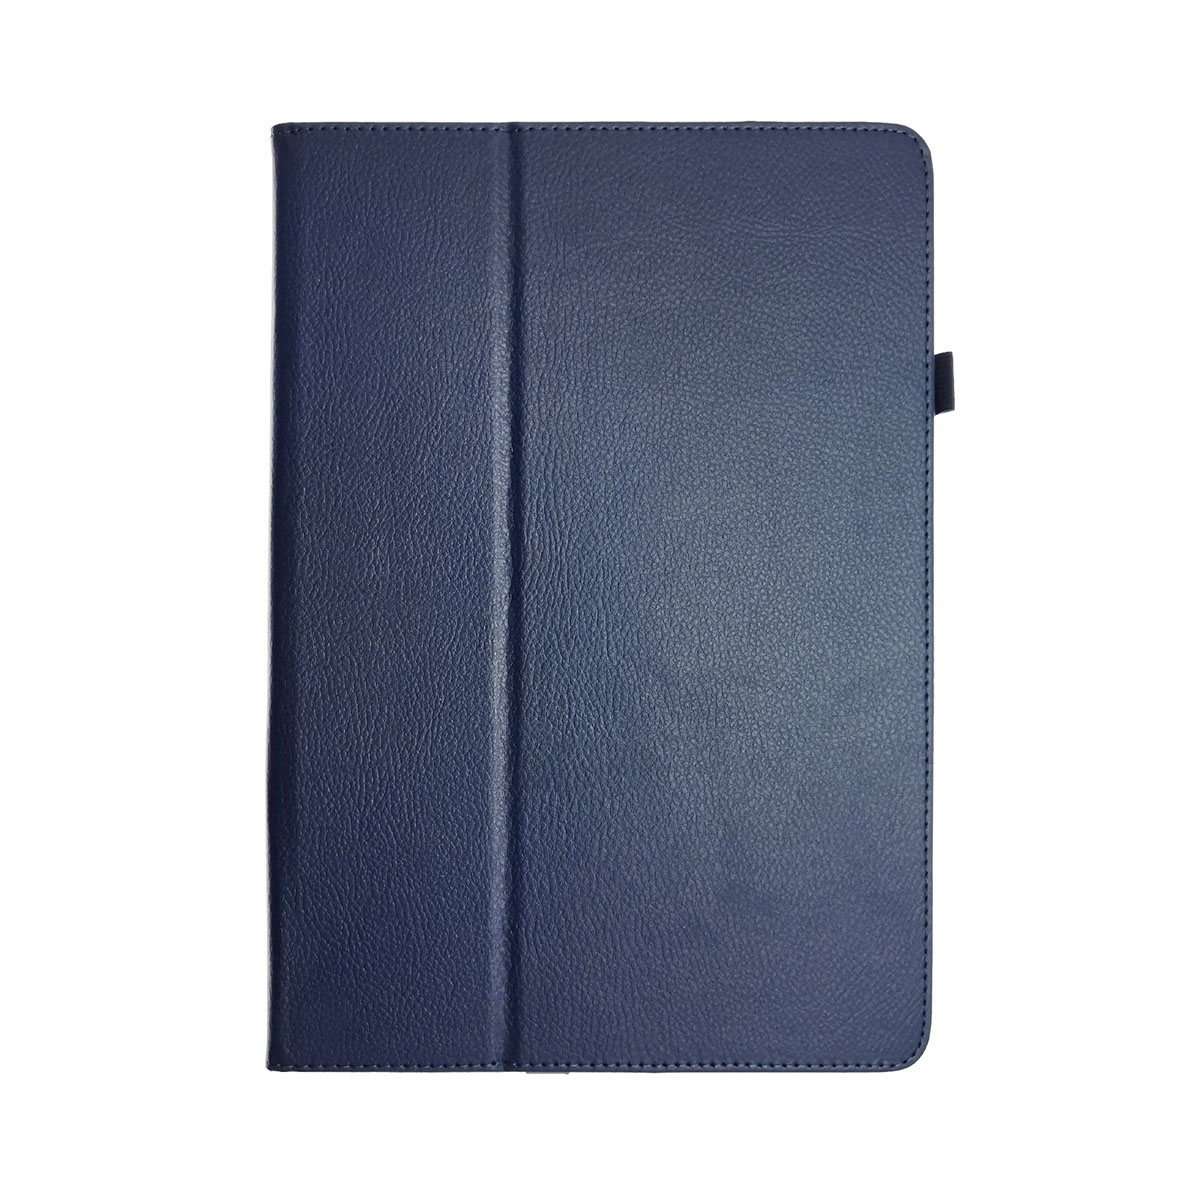 Чехол книжка для SAMSUNG Galaxy Note Pro 12.2 (SM-P900), экокожа, цвет синий.